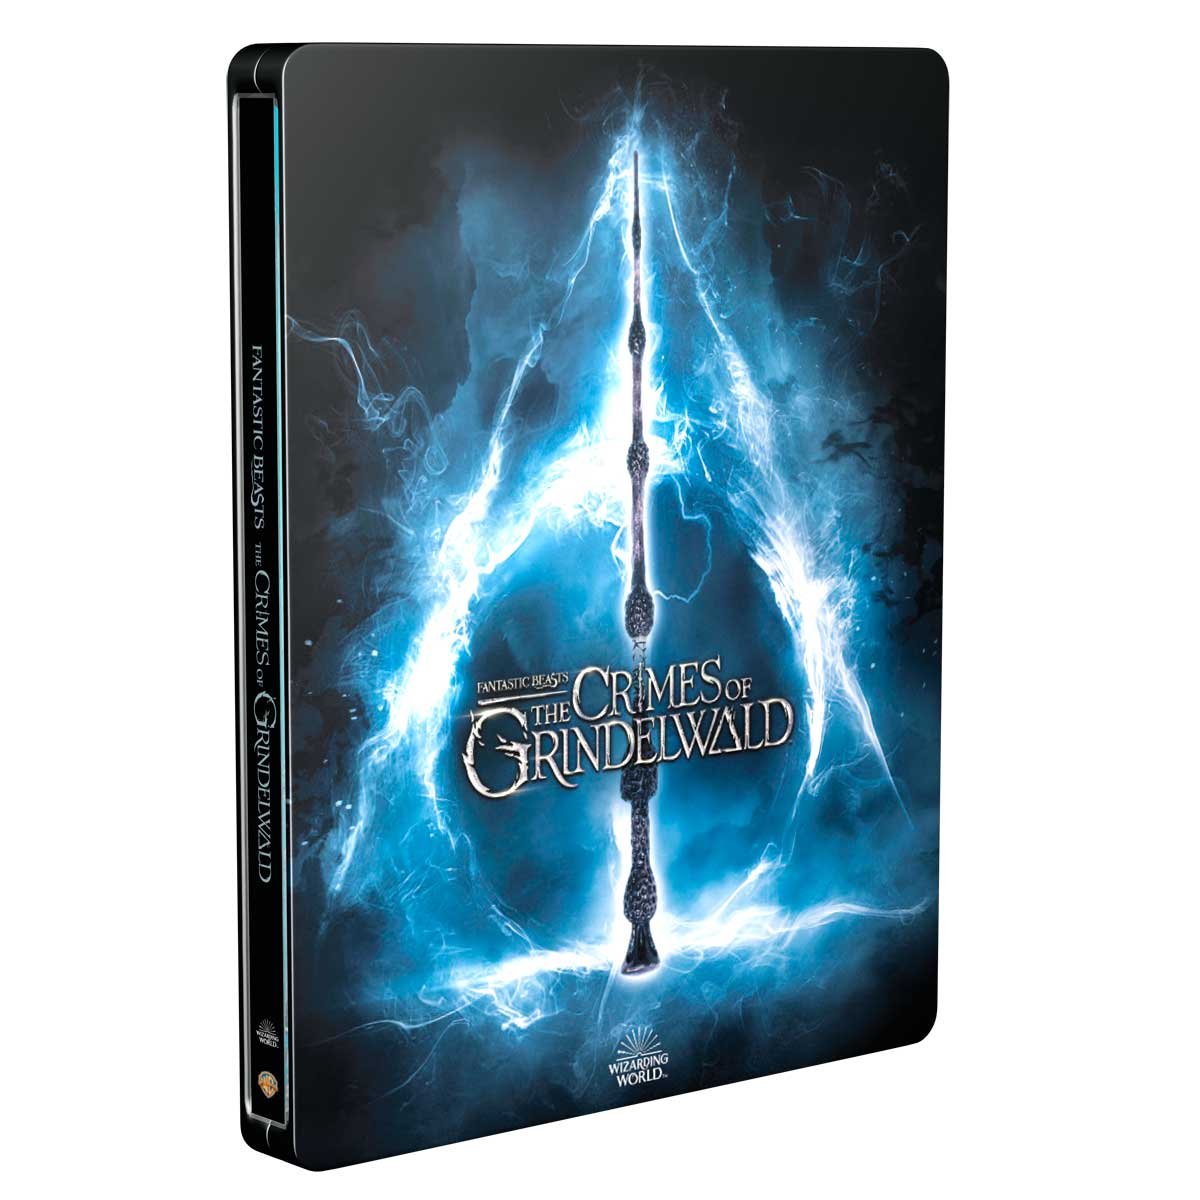 Blu Ray Steelbook Animales Fantasticos los Crimenes de Grindelwald